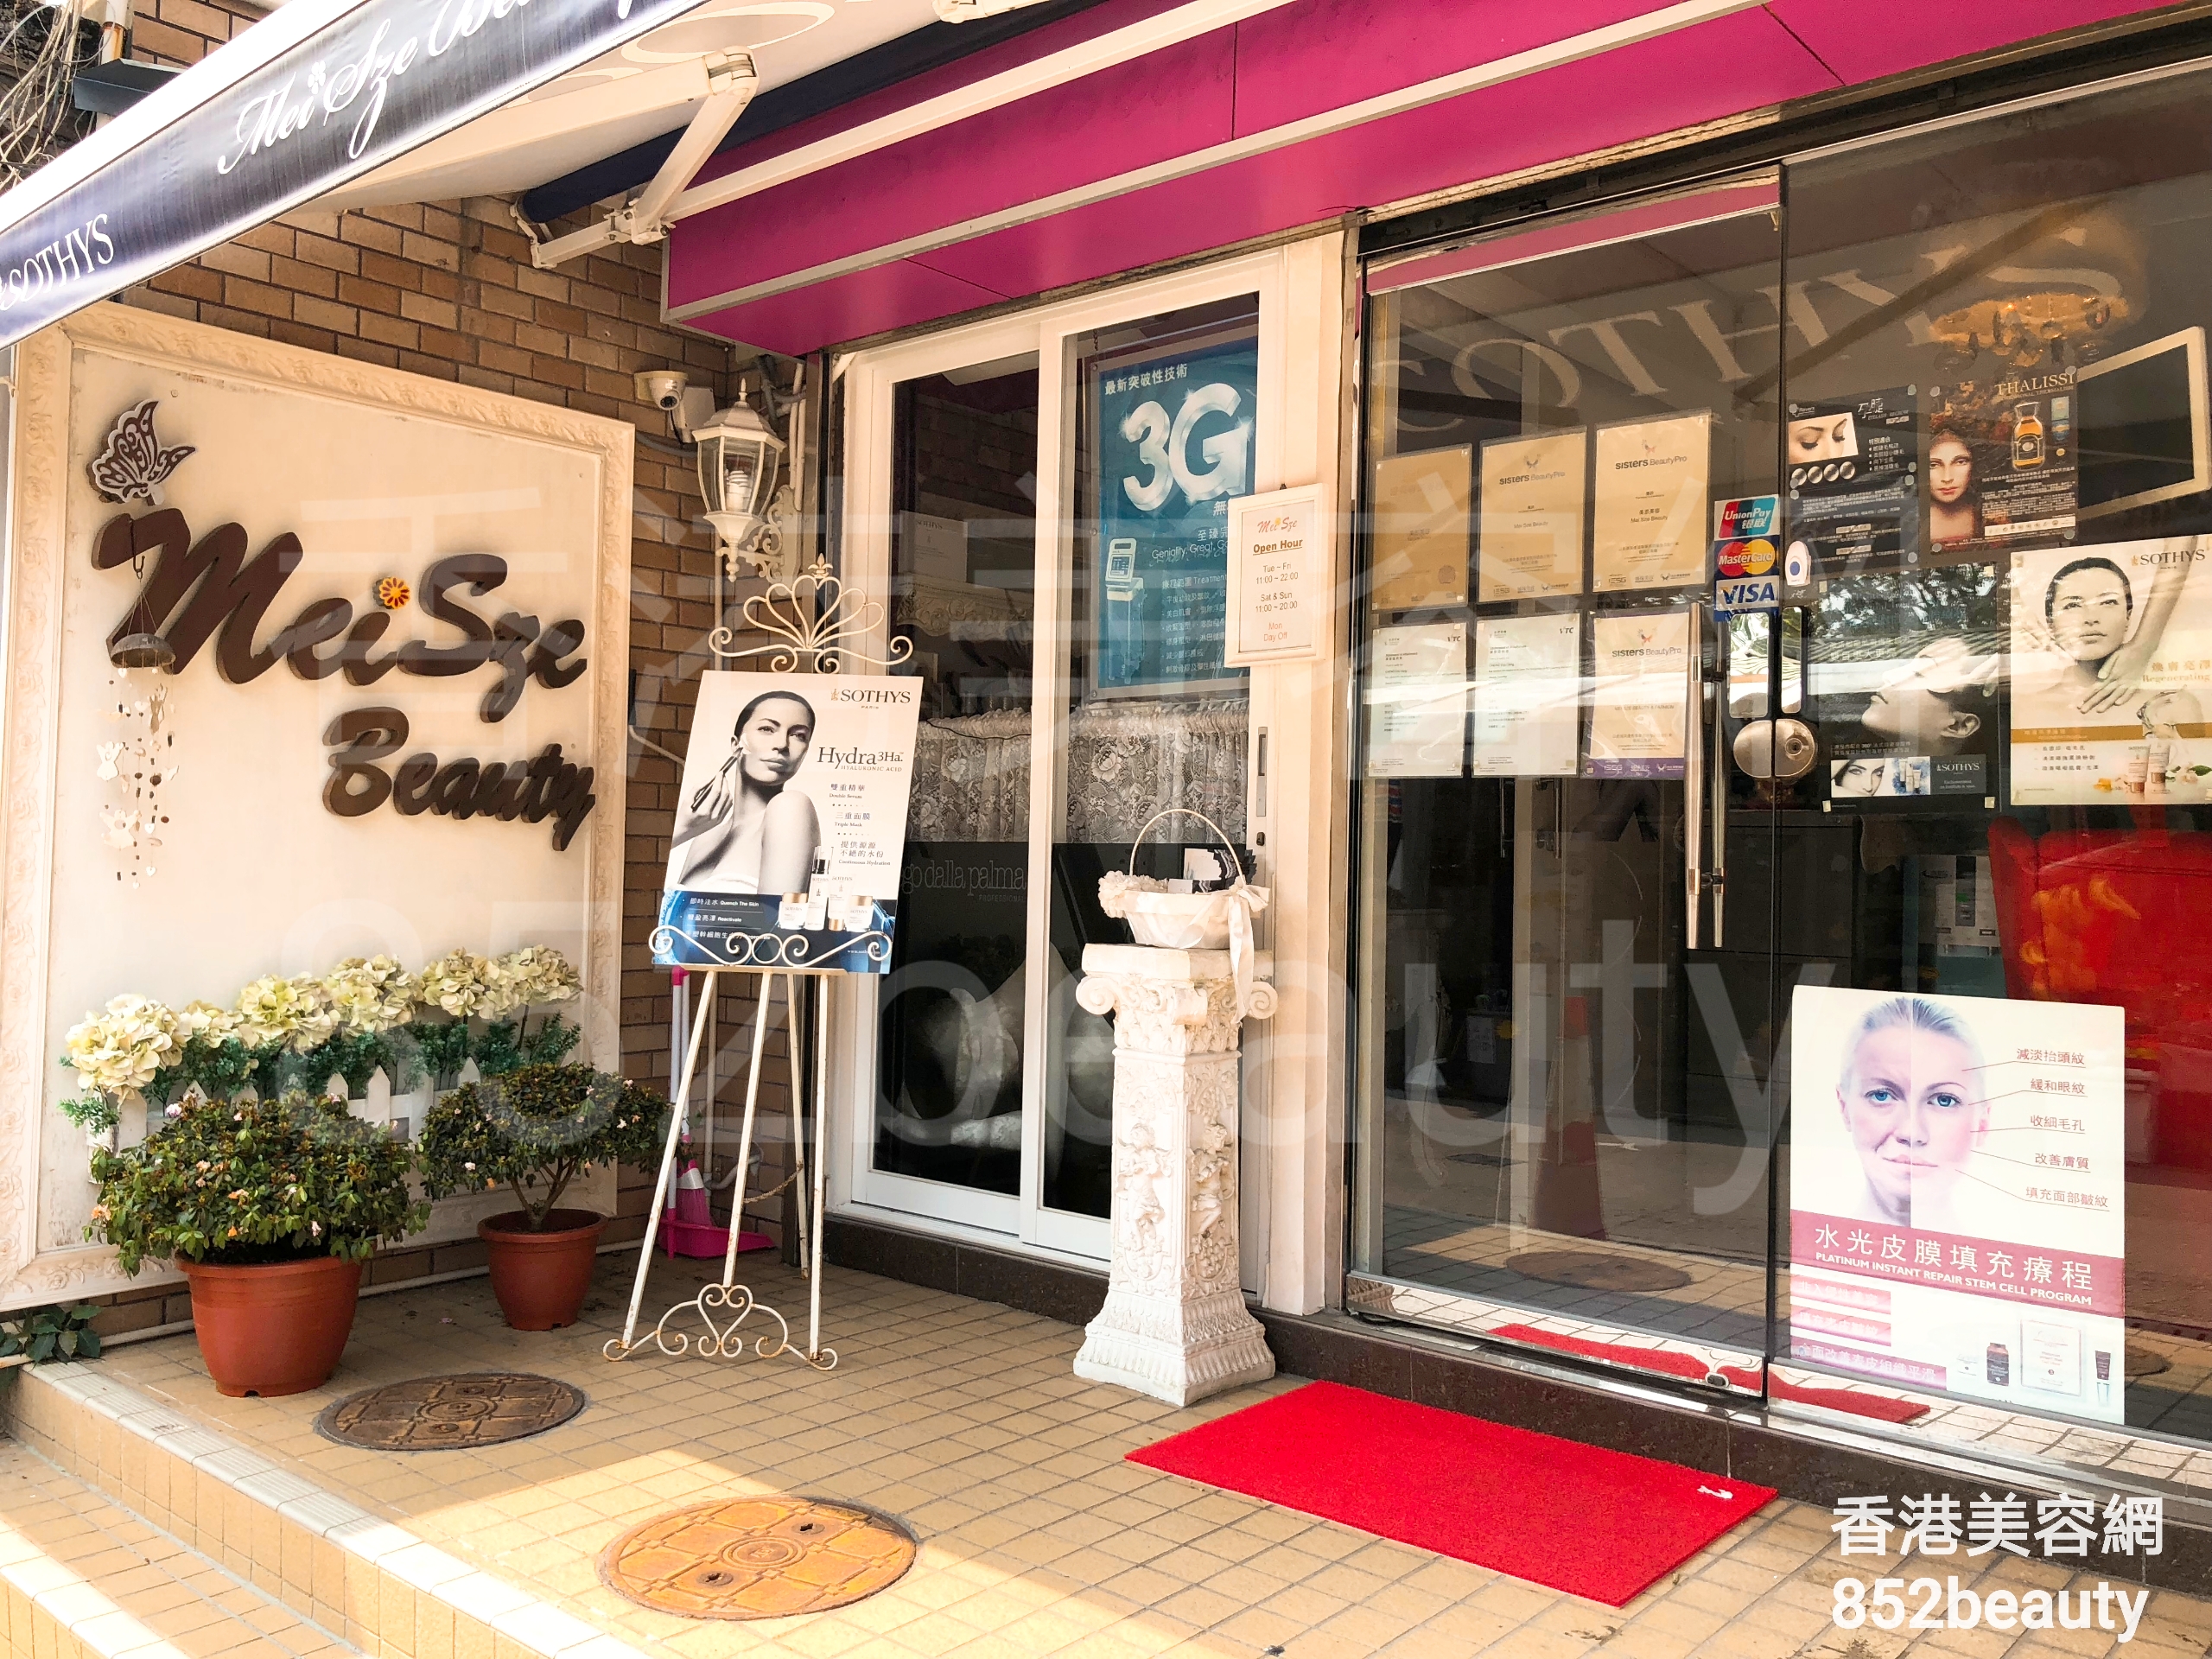 美容院 Beauty Salon: Mei Sze Beauty